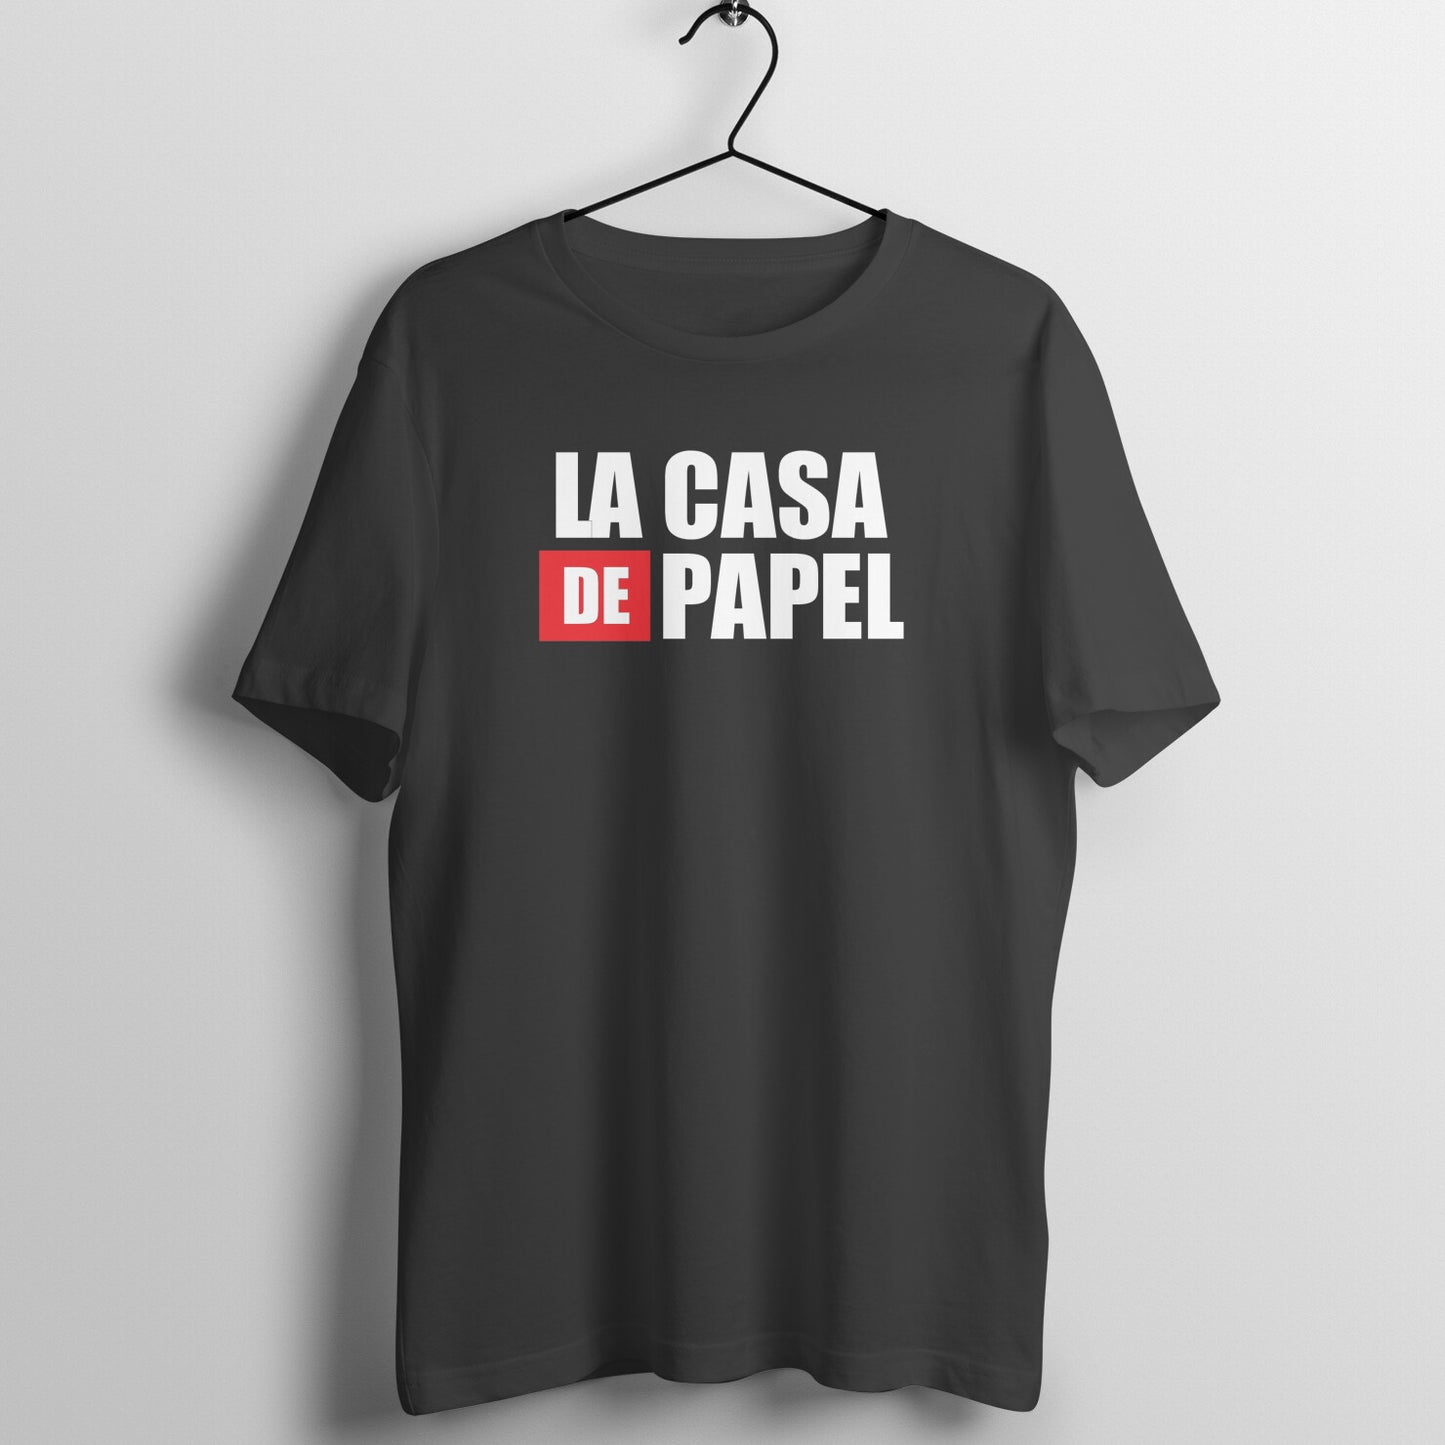 LA CASA DE PAPEL - Money Heist T-shirt